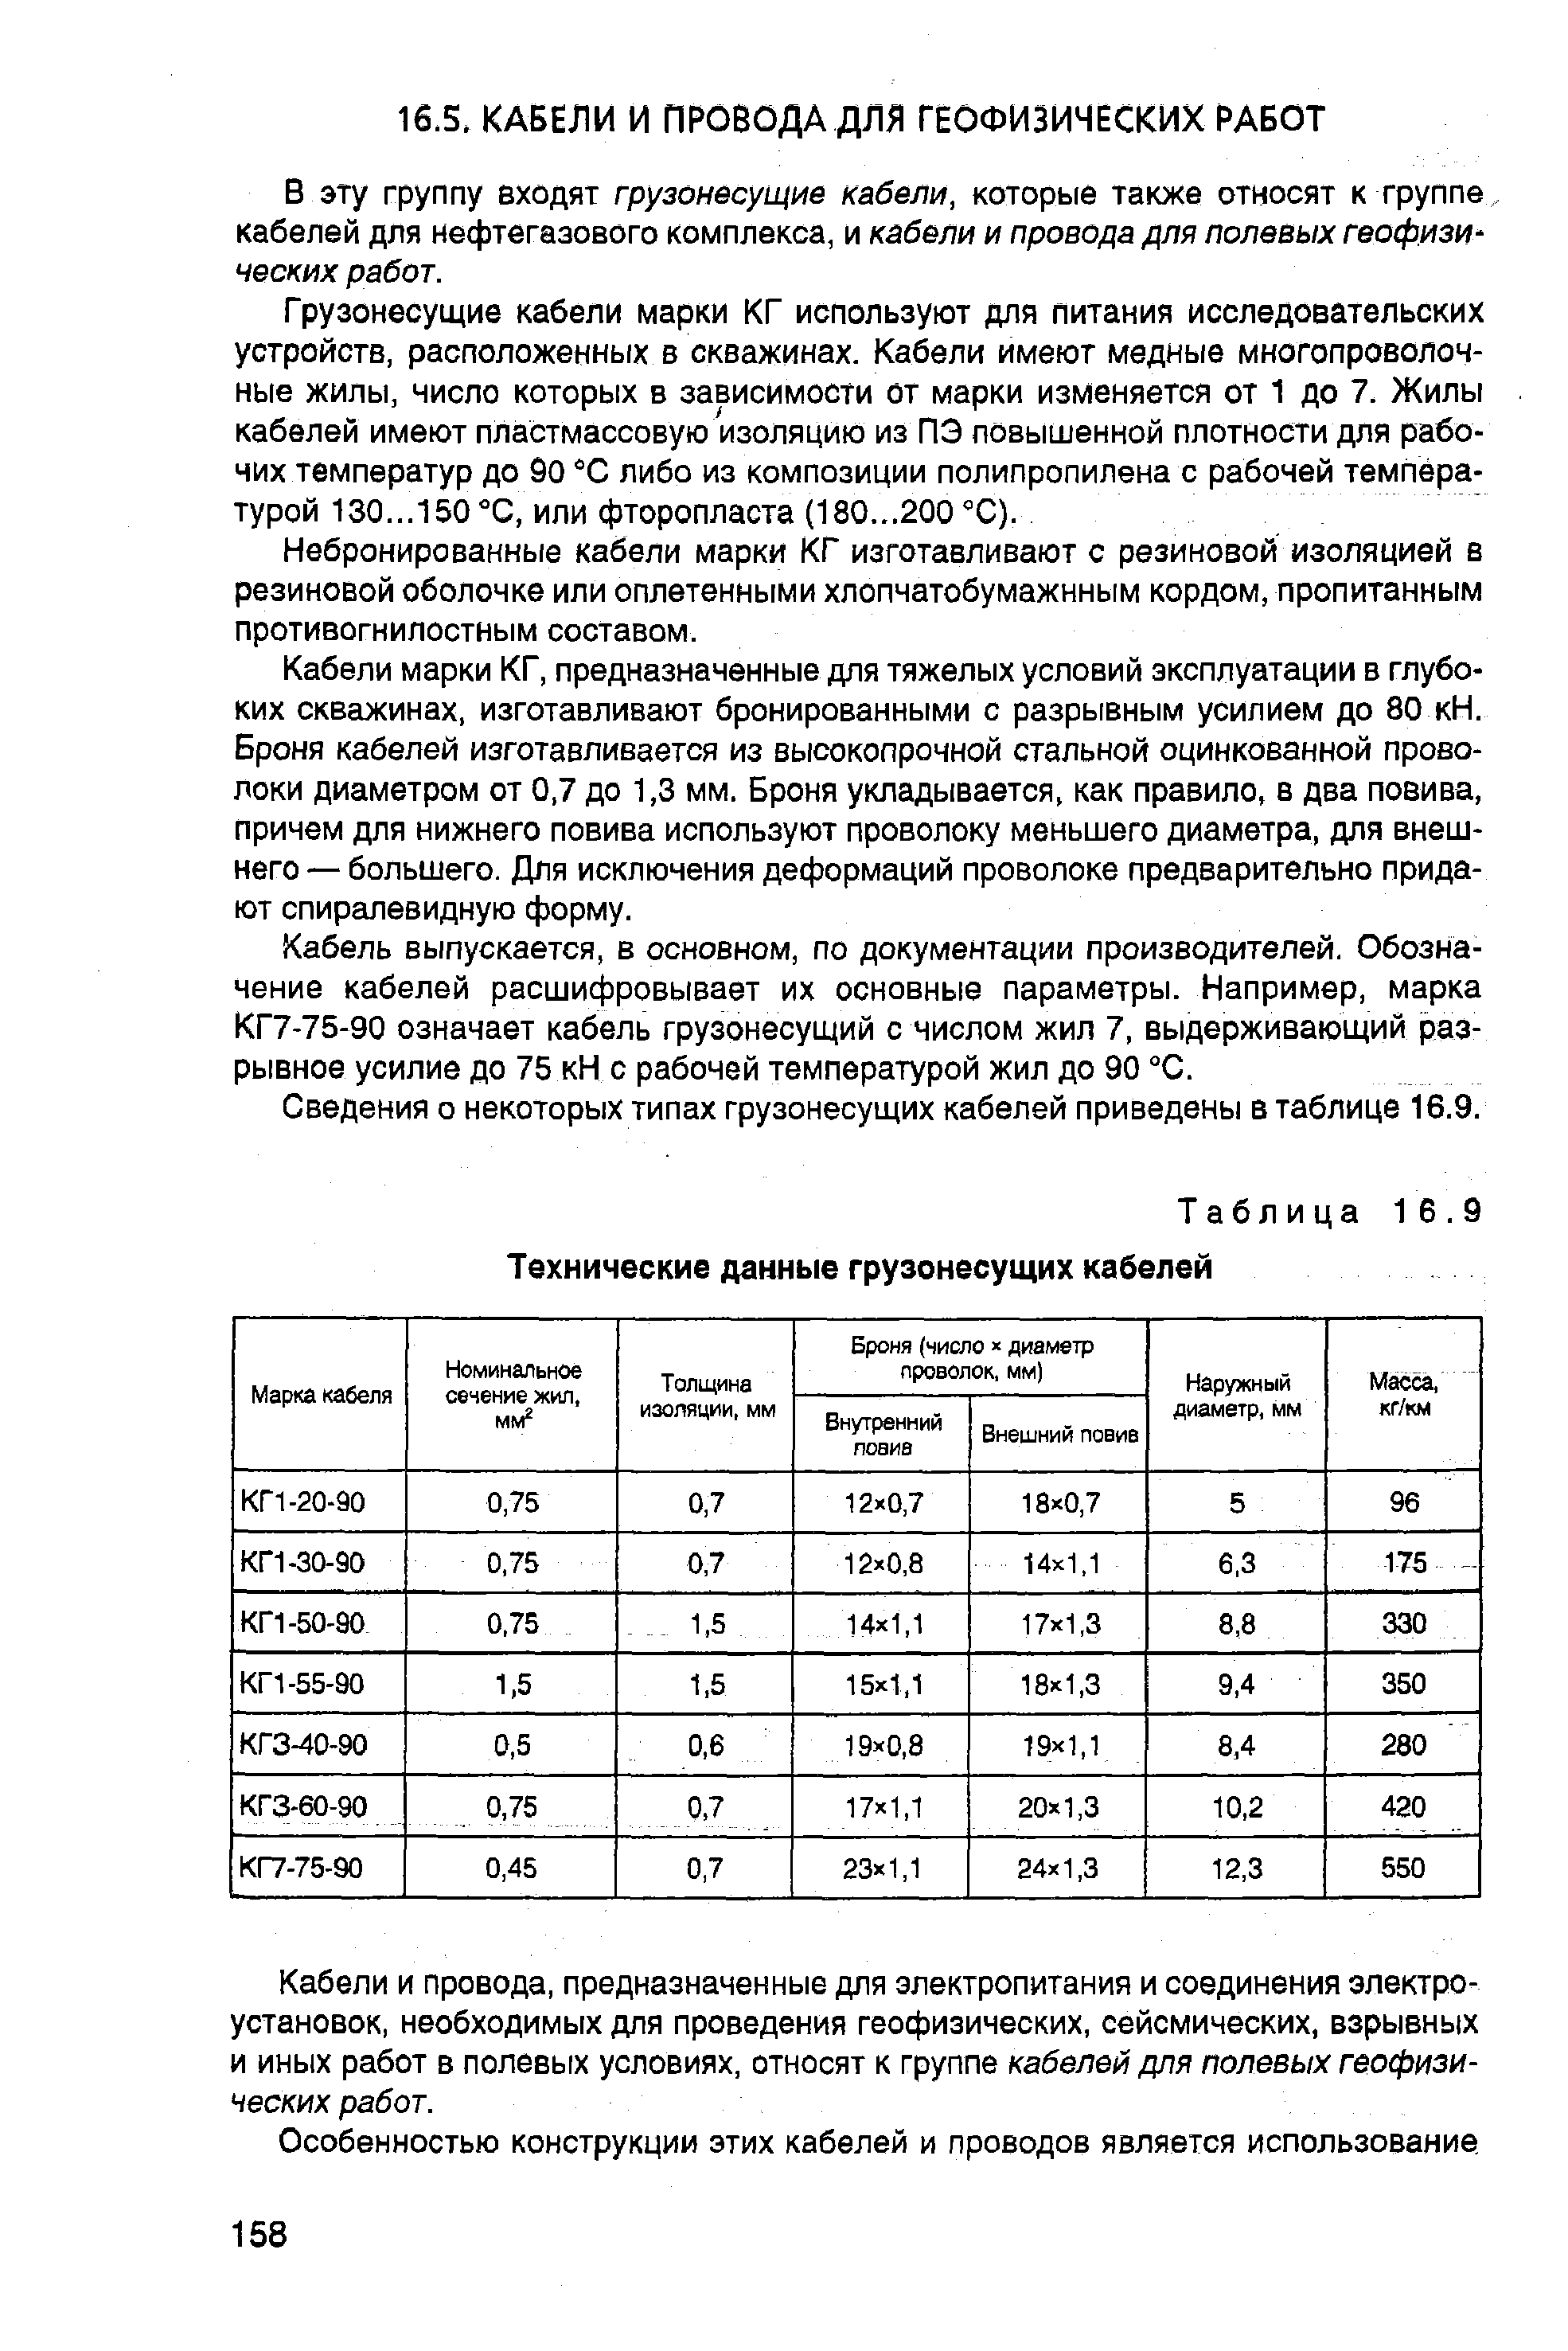 Таблица 16.9 Технические данные грузонесущих кабелей
